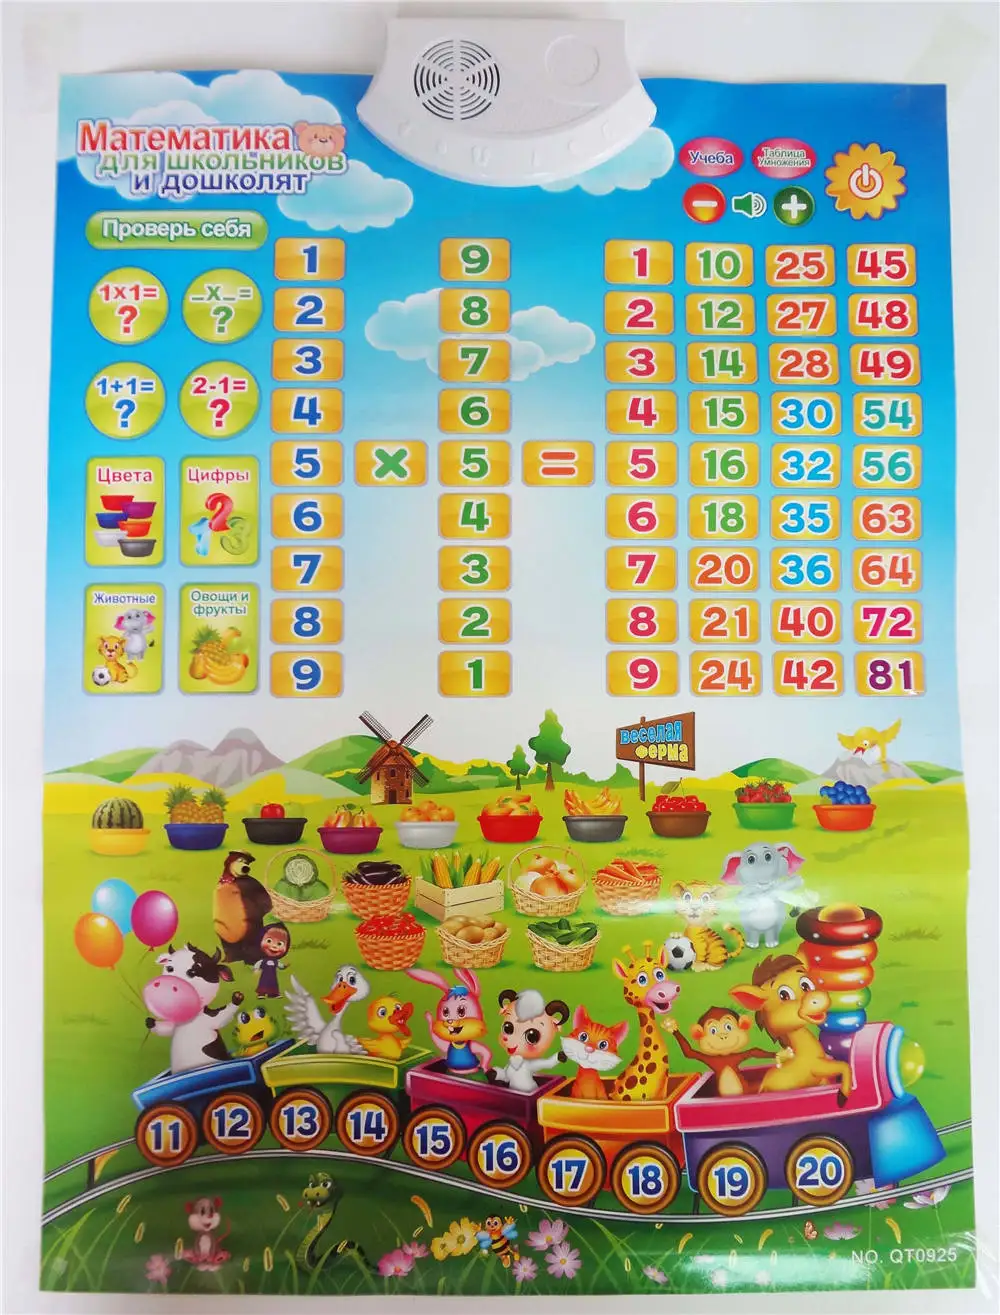 Qjing русский номер образовательная фонетическая карта электронная машина обучения детская музыкальная игрушка ранний язык звук игрушки лучшие подарки